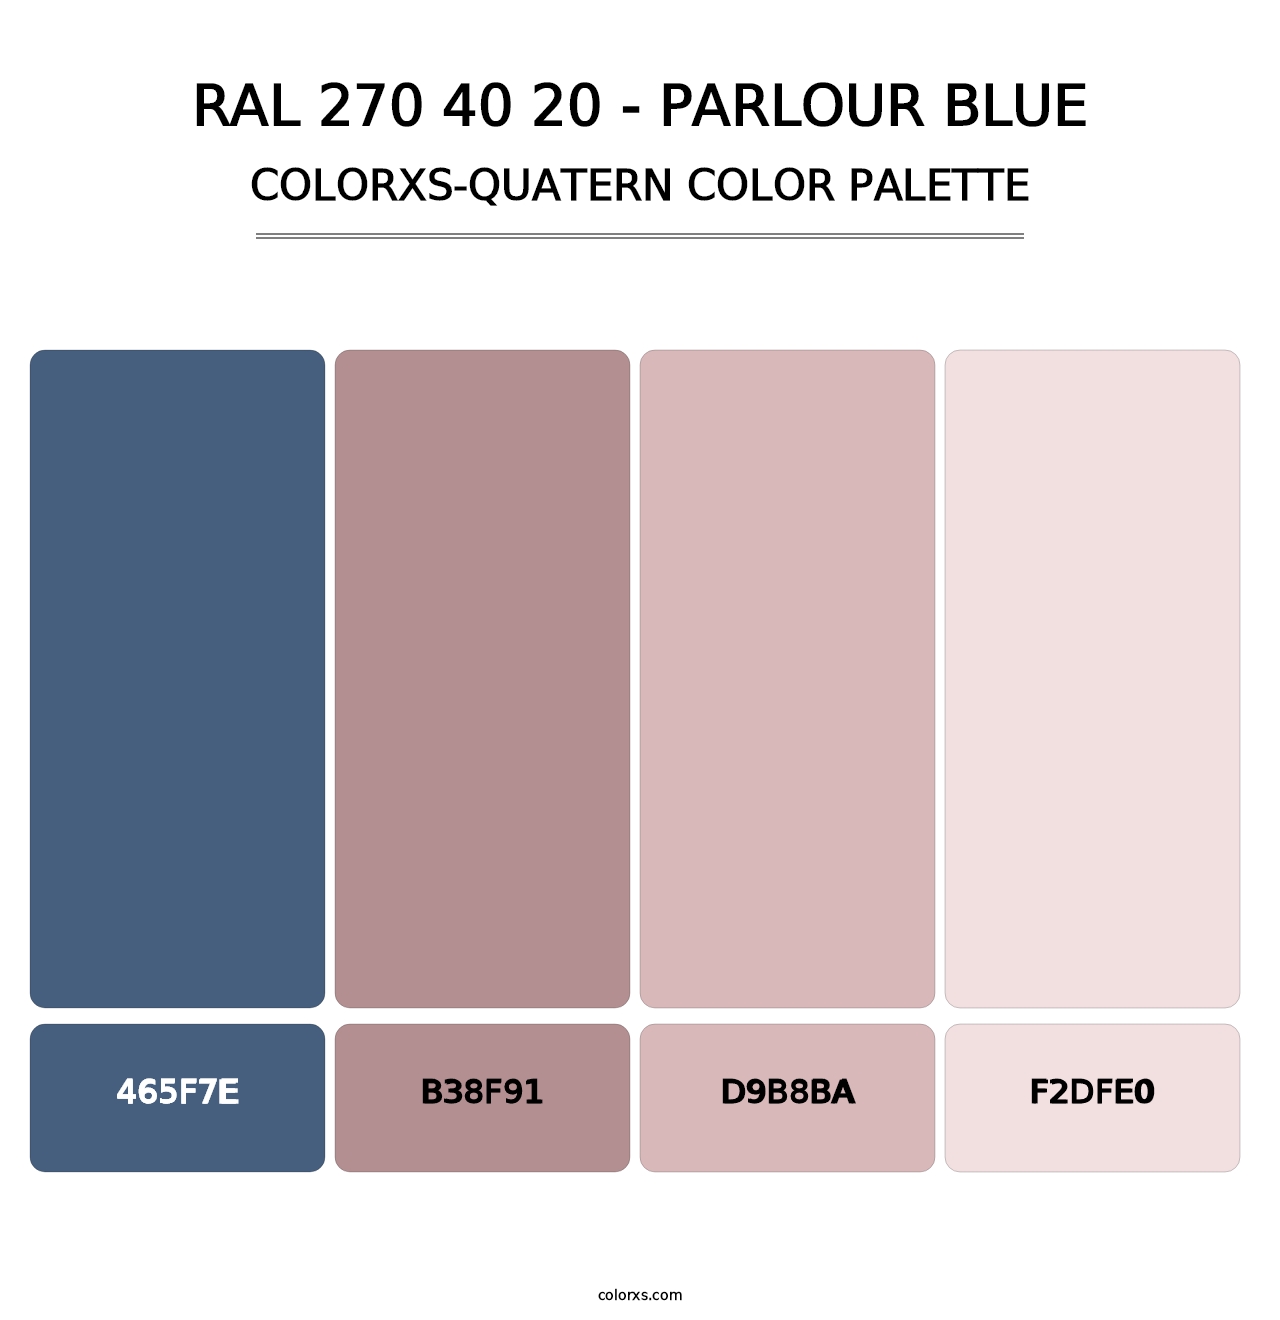 RAL 270 40 20 - Parlour Blue - Colorxs Quatern Palette